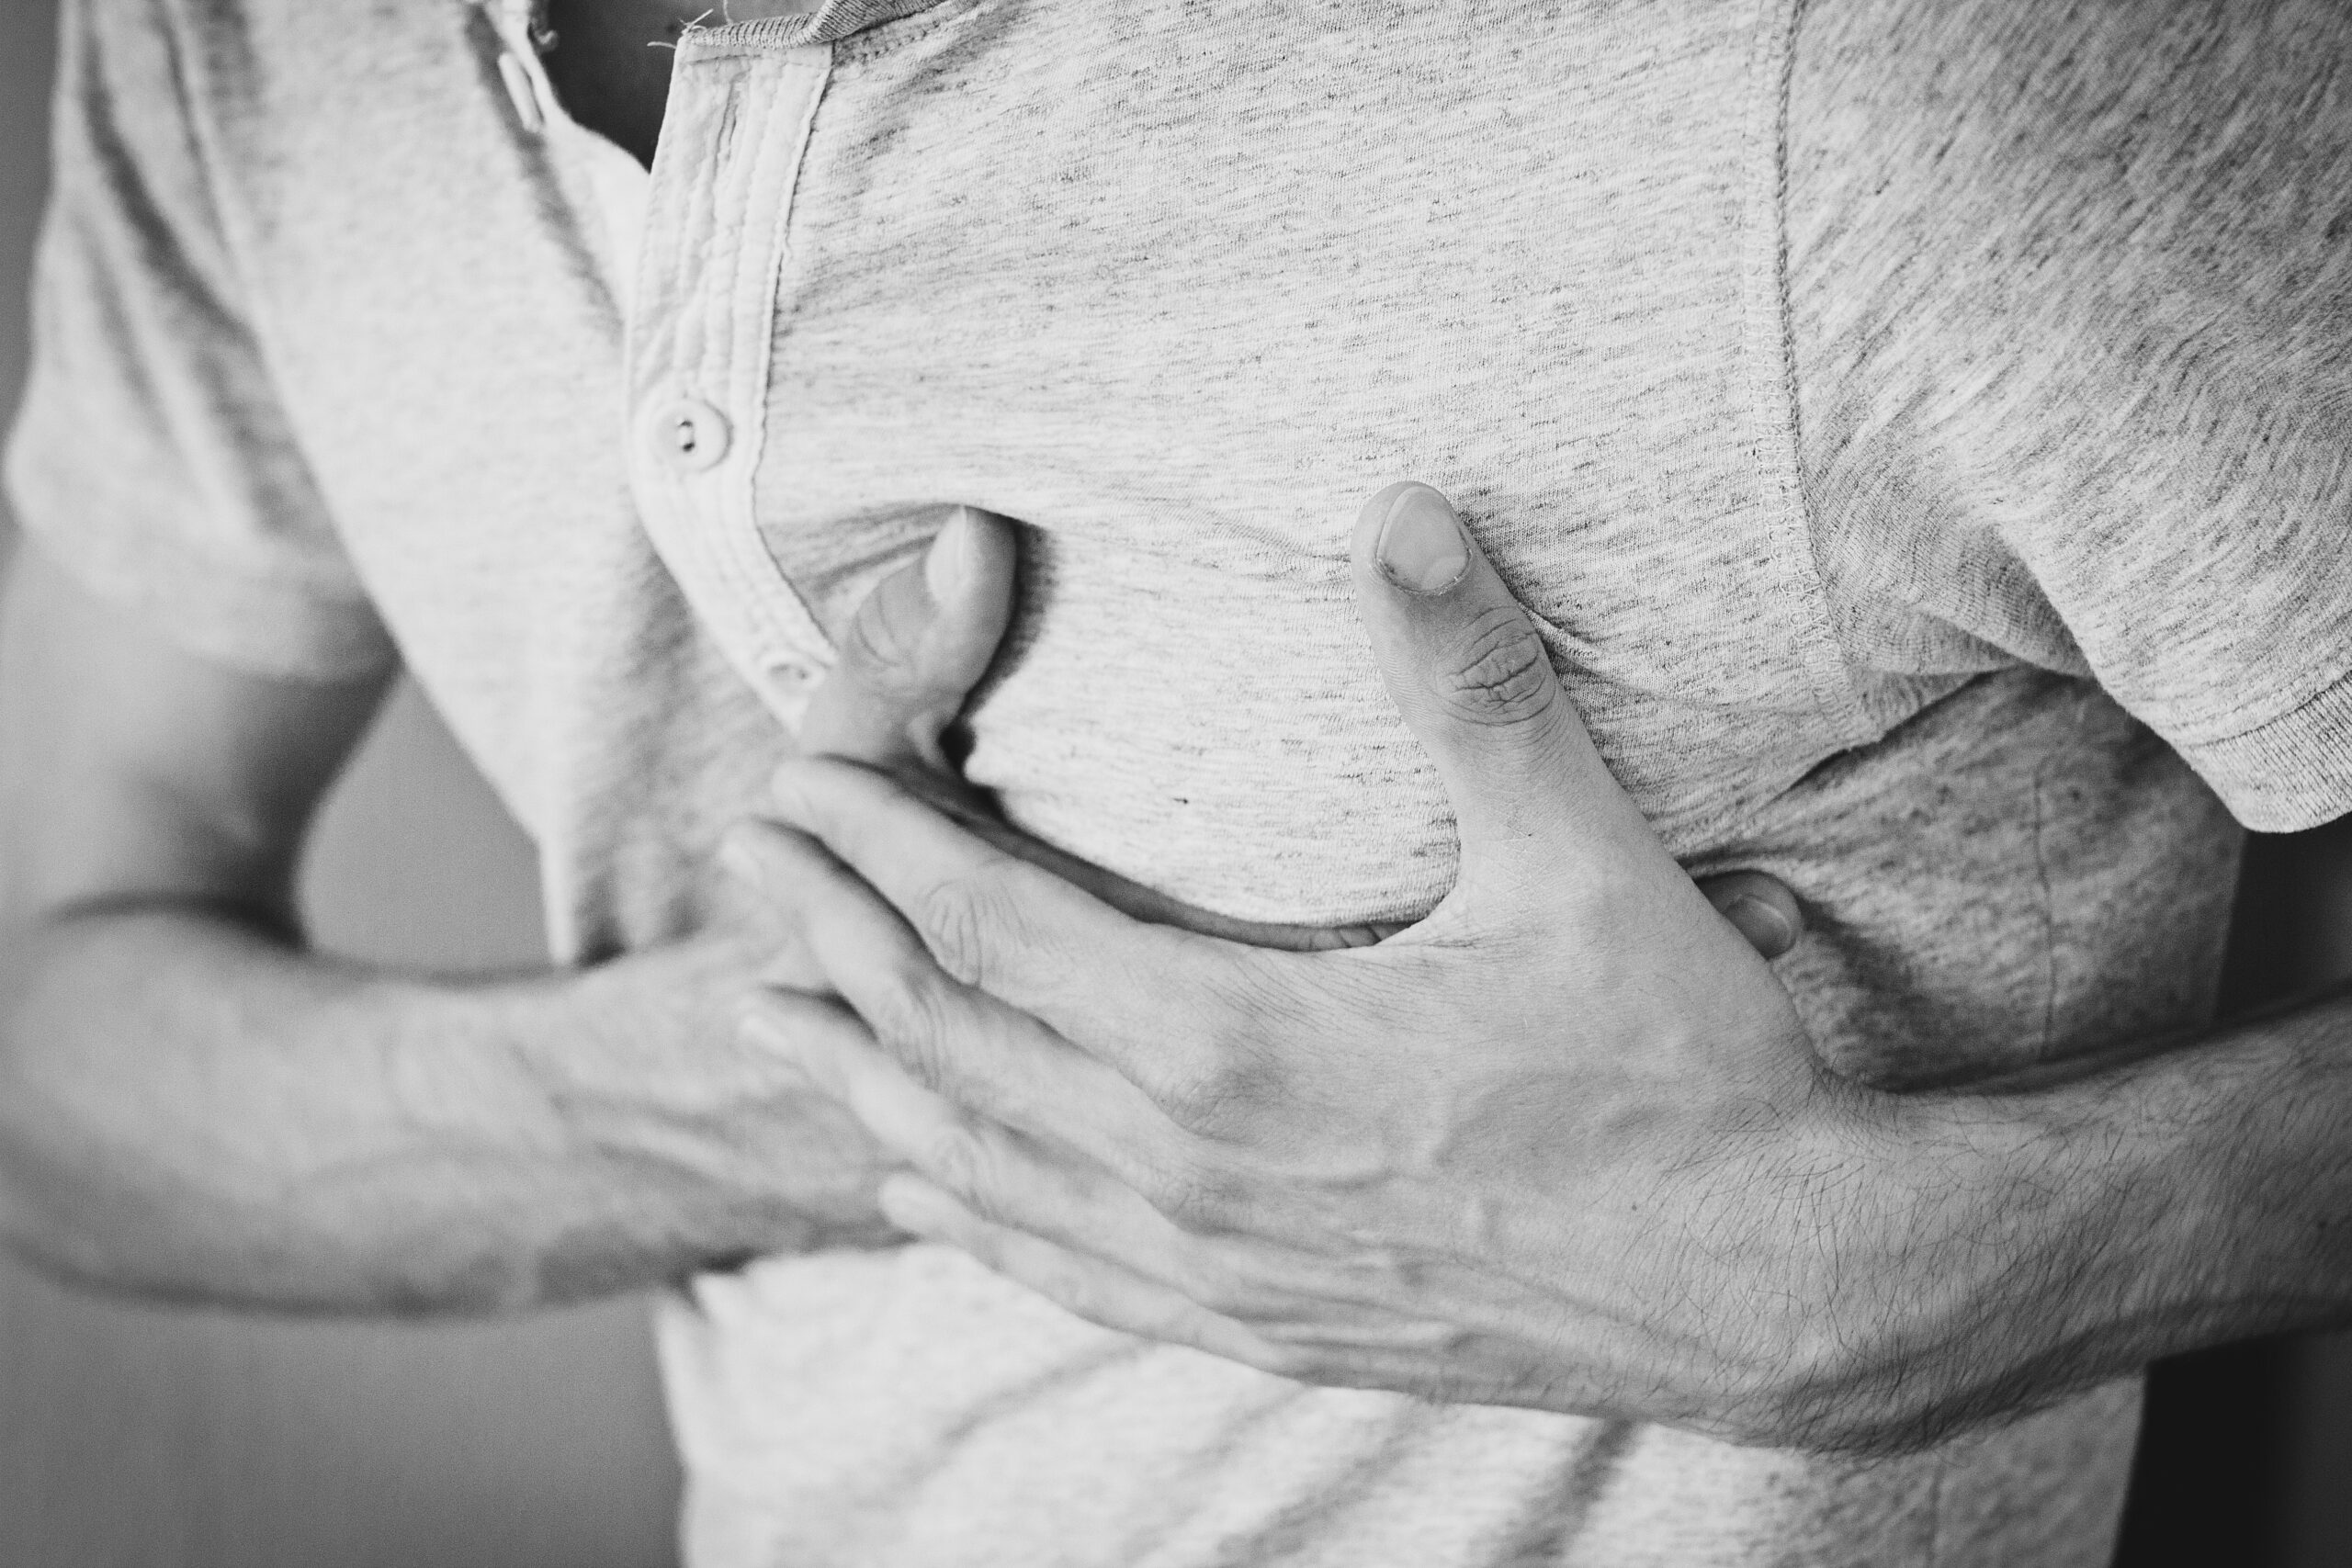 كيف أفرق بين ألم العضلات وألم القلب؟| 7 حالات لآلام الصدر ليست نوبة قلبية